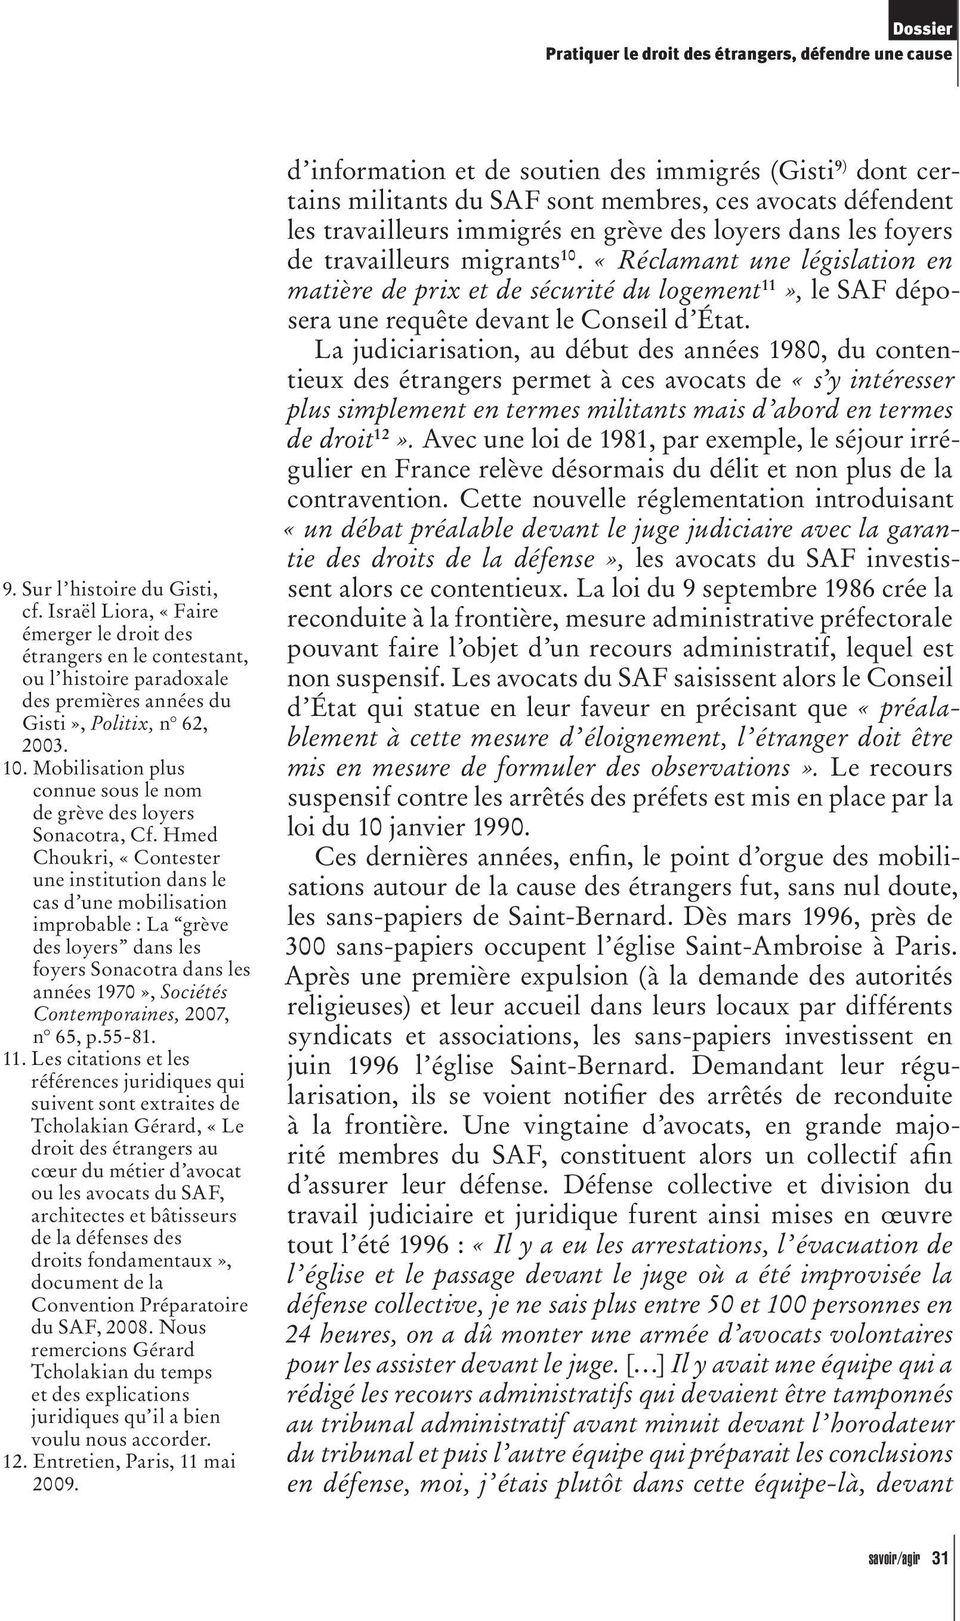 Hmed Choukri, «Contester une institution dans le cas d une mobilisation improbable : La grève des loyers dans les foyers Sonacotra dans les années 1970», Sociétés Contemporaines, 2007, n 65, p.55-81.